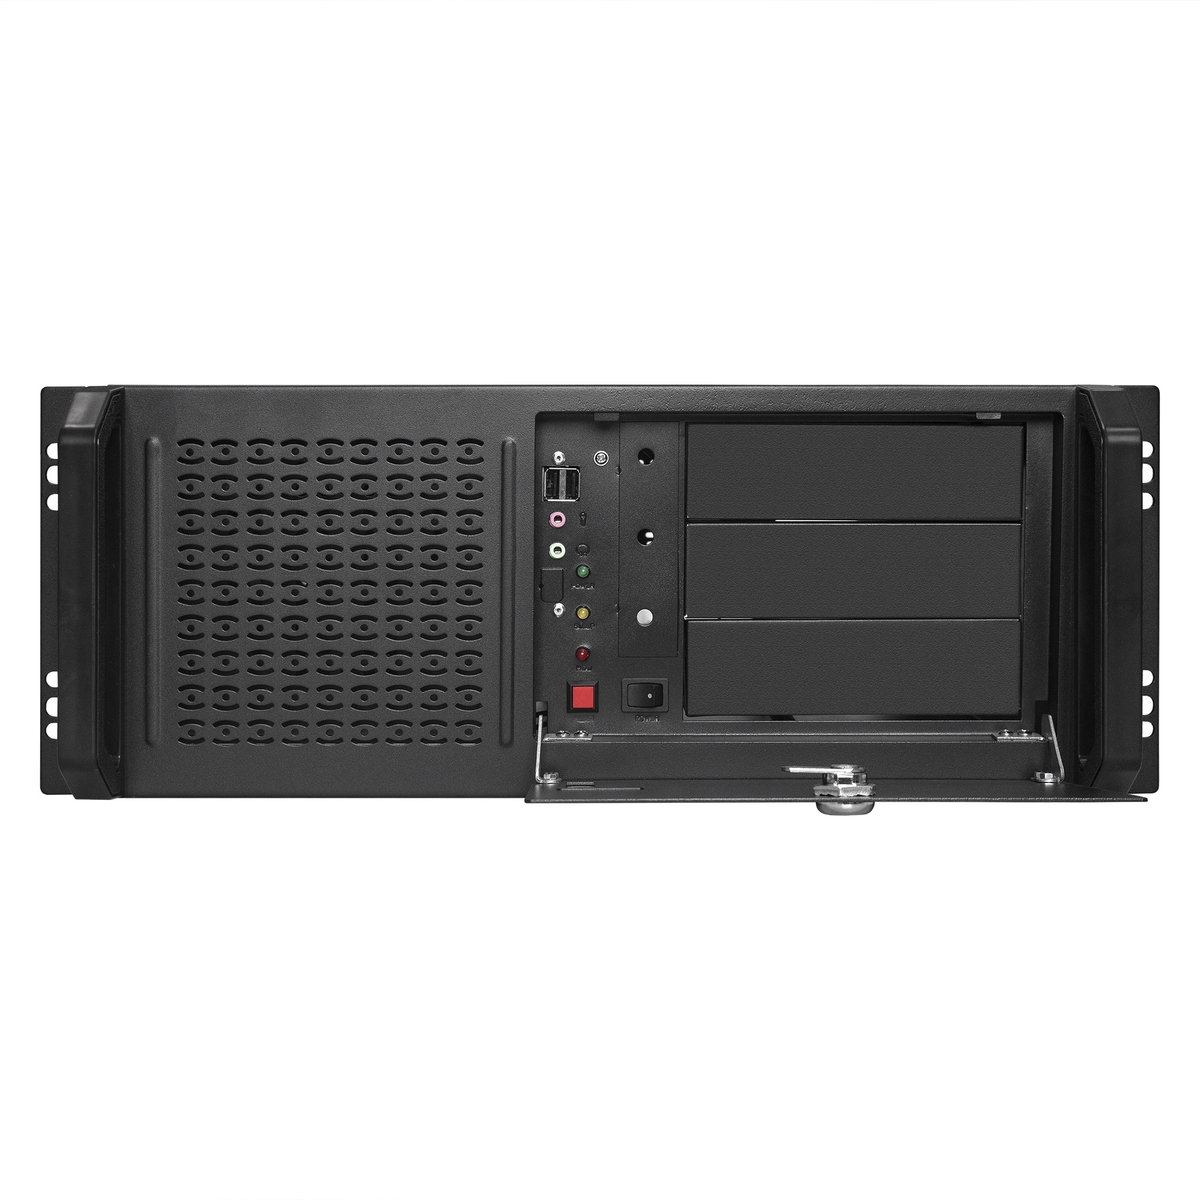 Серверный корпус ExeGate Pro 4U450-16/4U4019S/800RADS